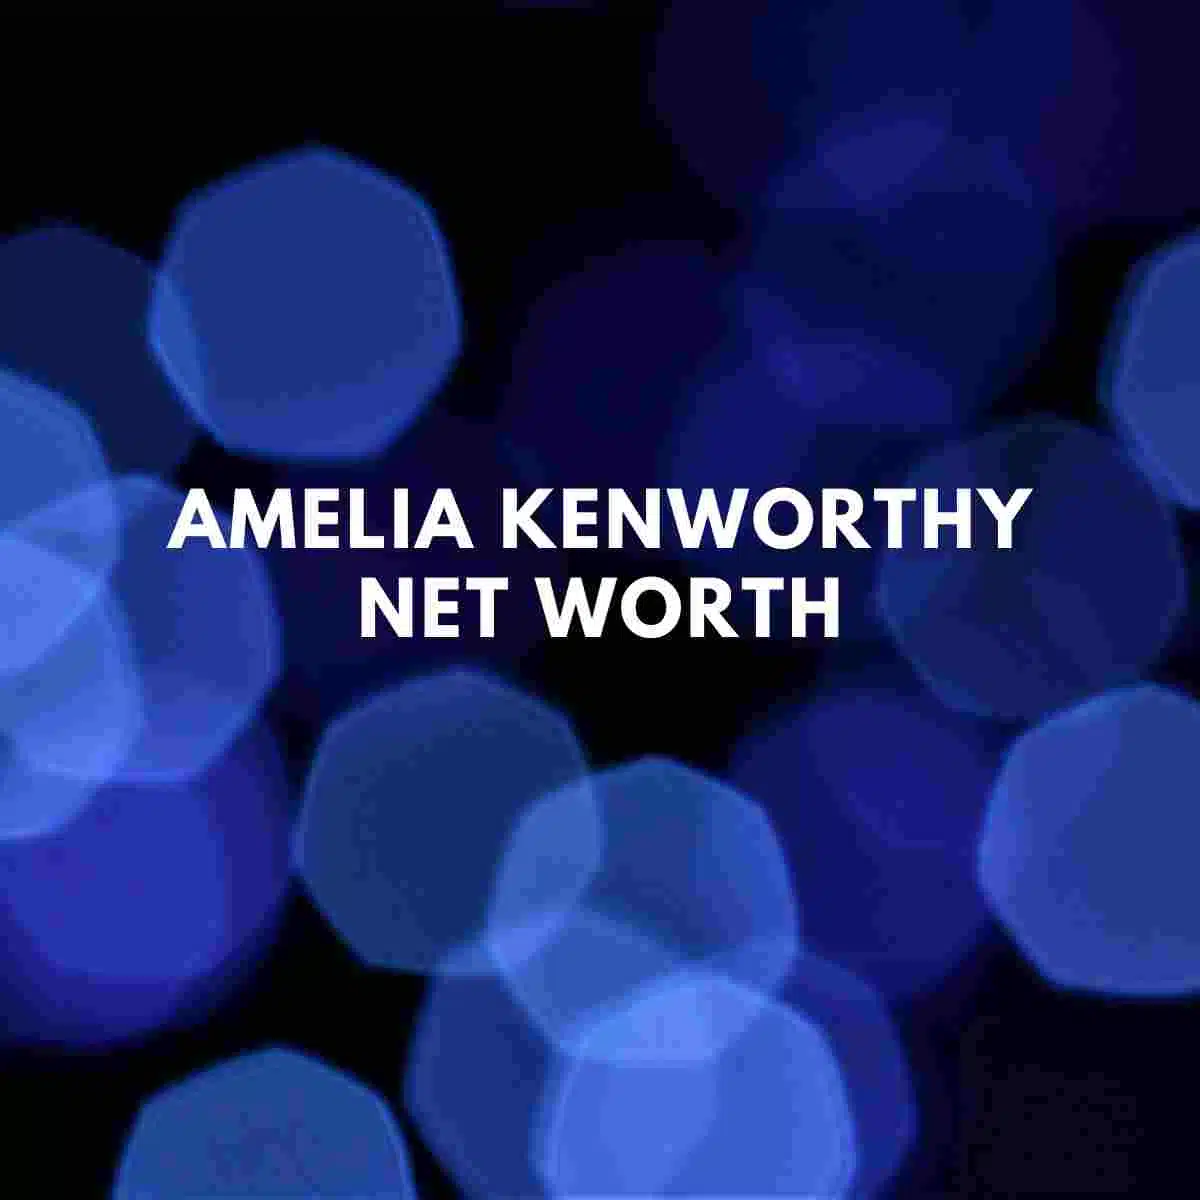 Amelia Kenworthy net worth